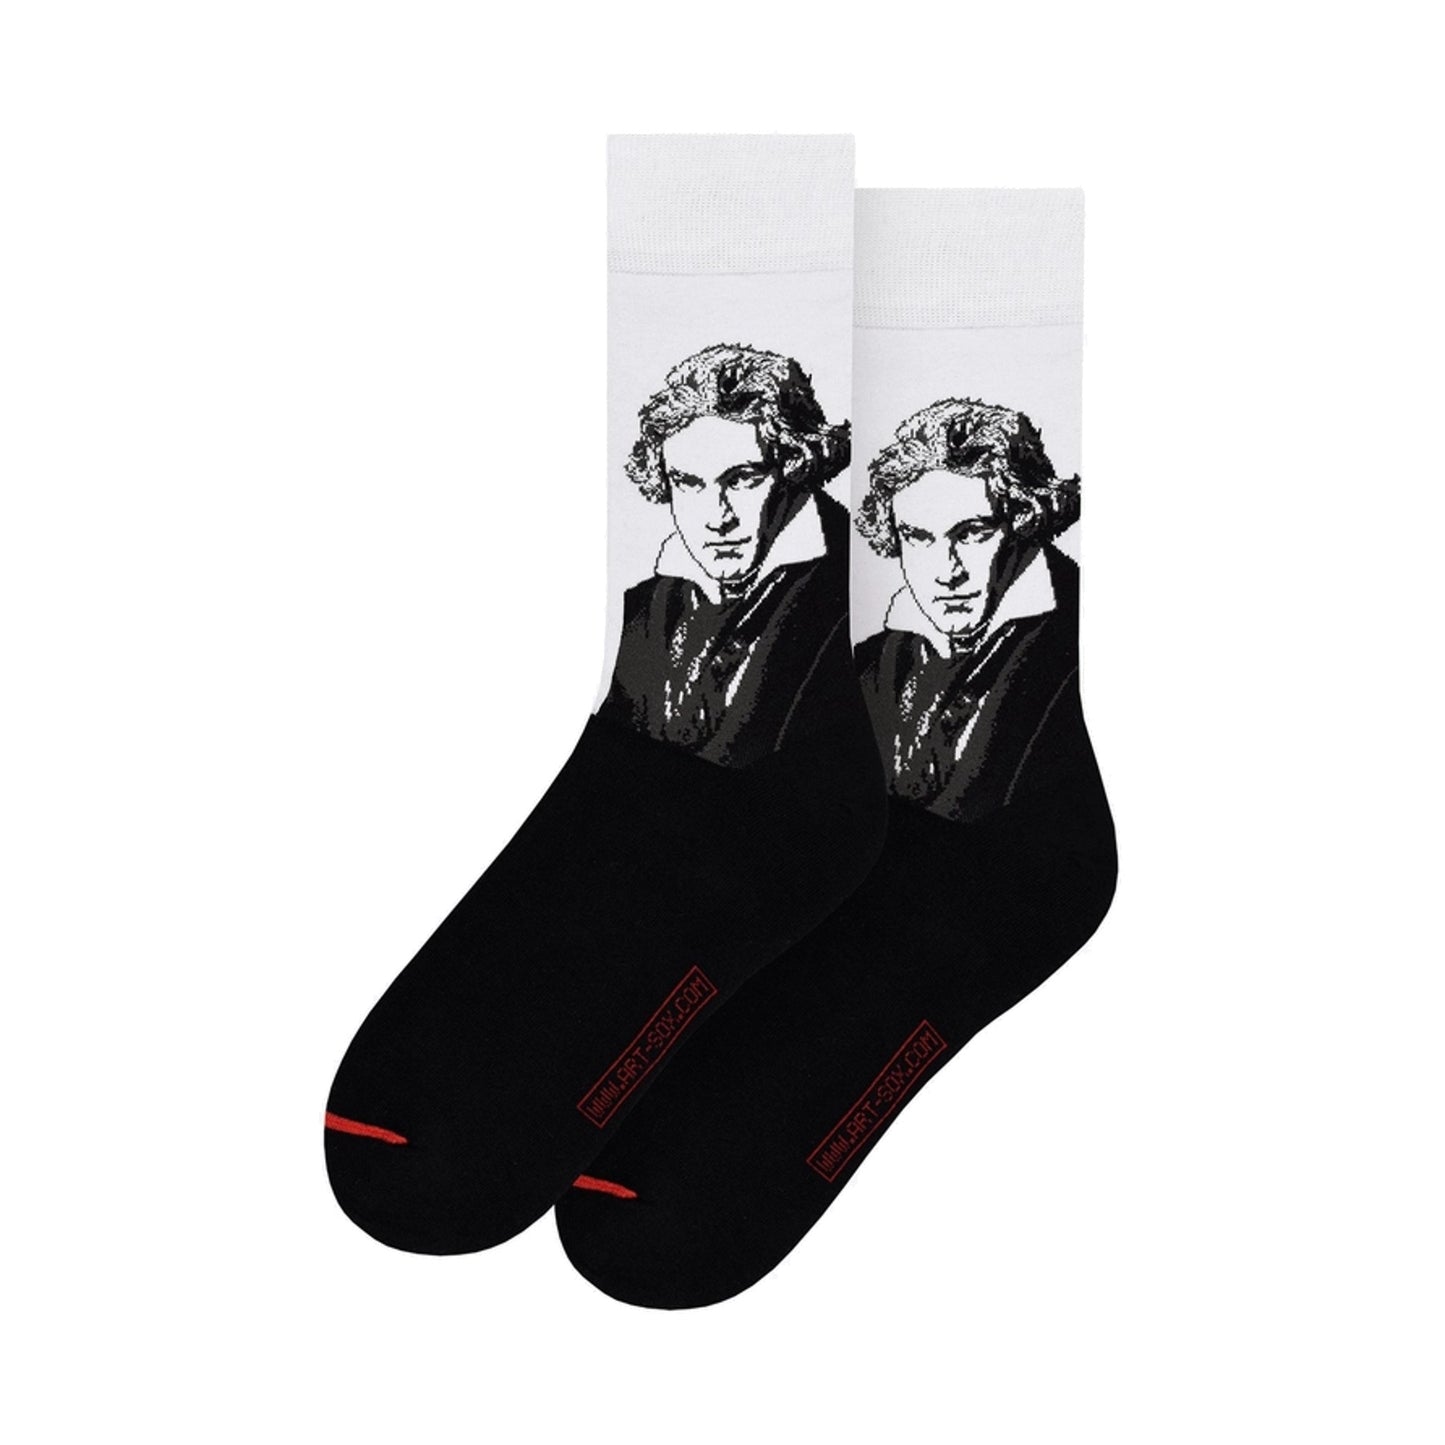 Beethoven Portrait Men’s Socks, White